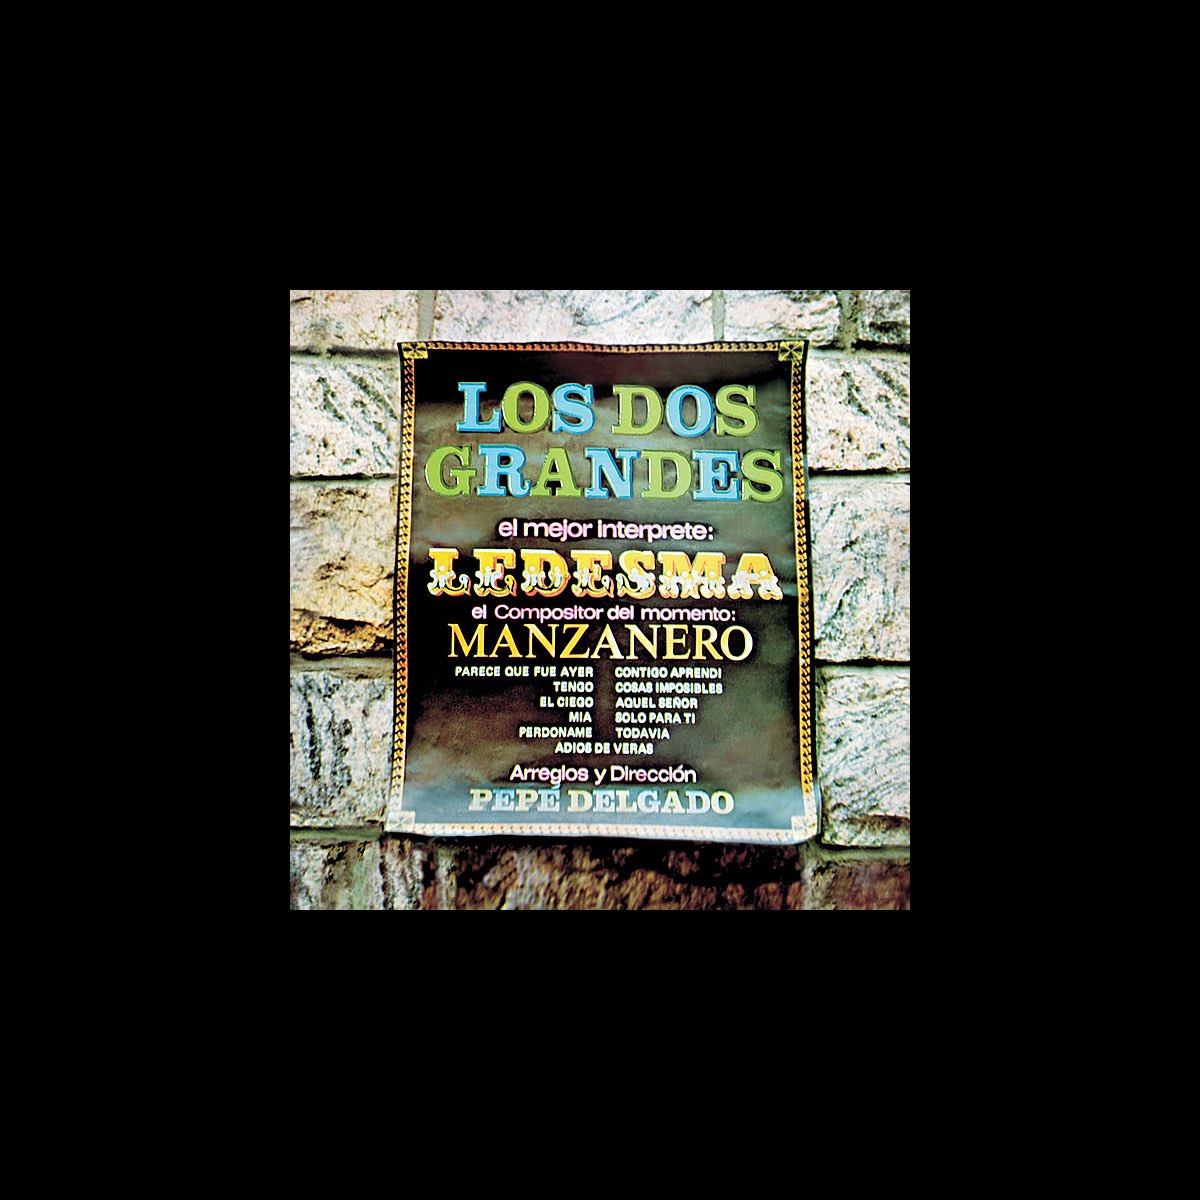 Los Dos Grandes - Ledesma y Manzanero de Roberto Ledesma en Apple Music